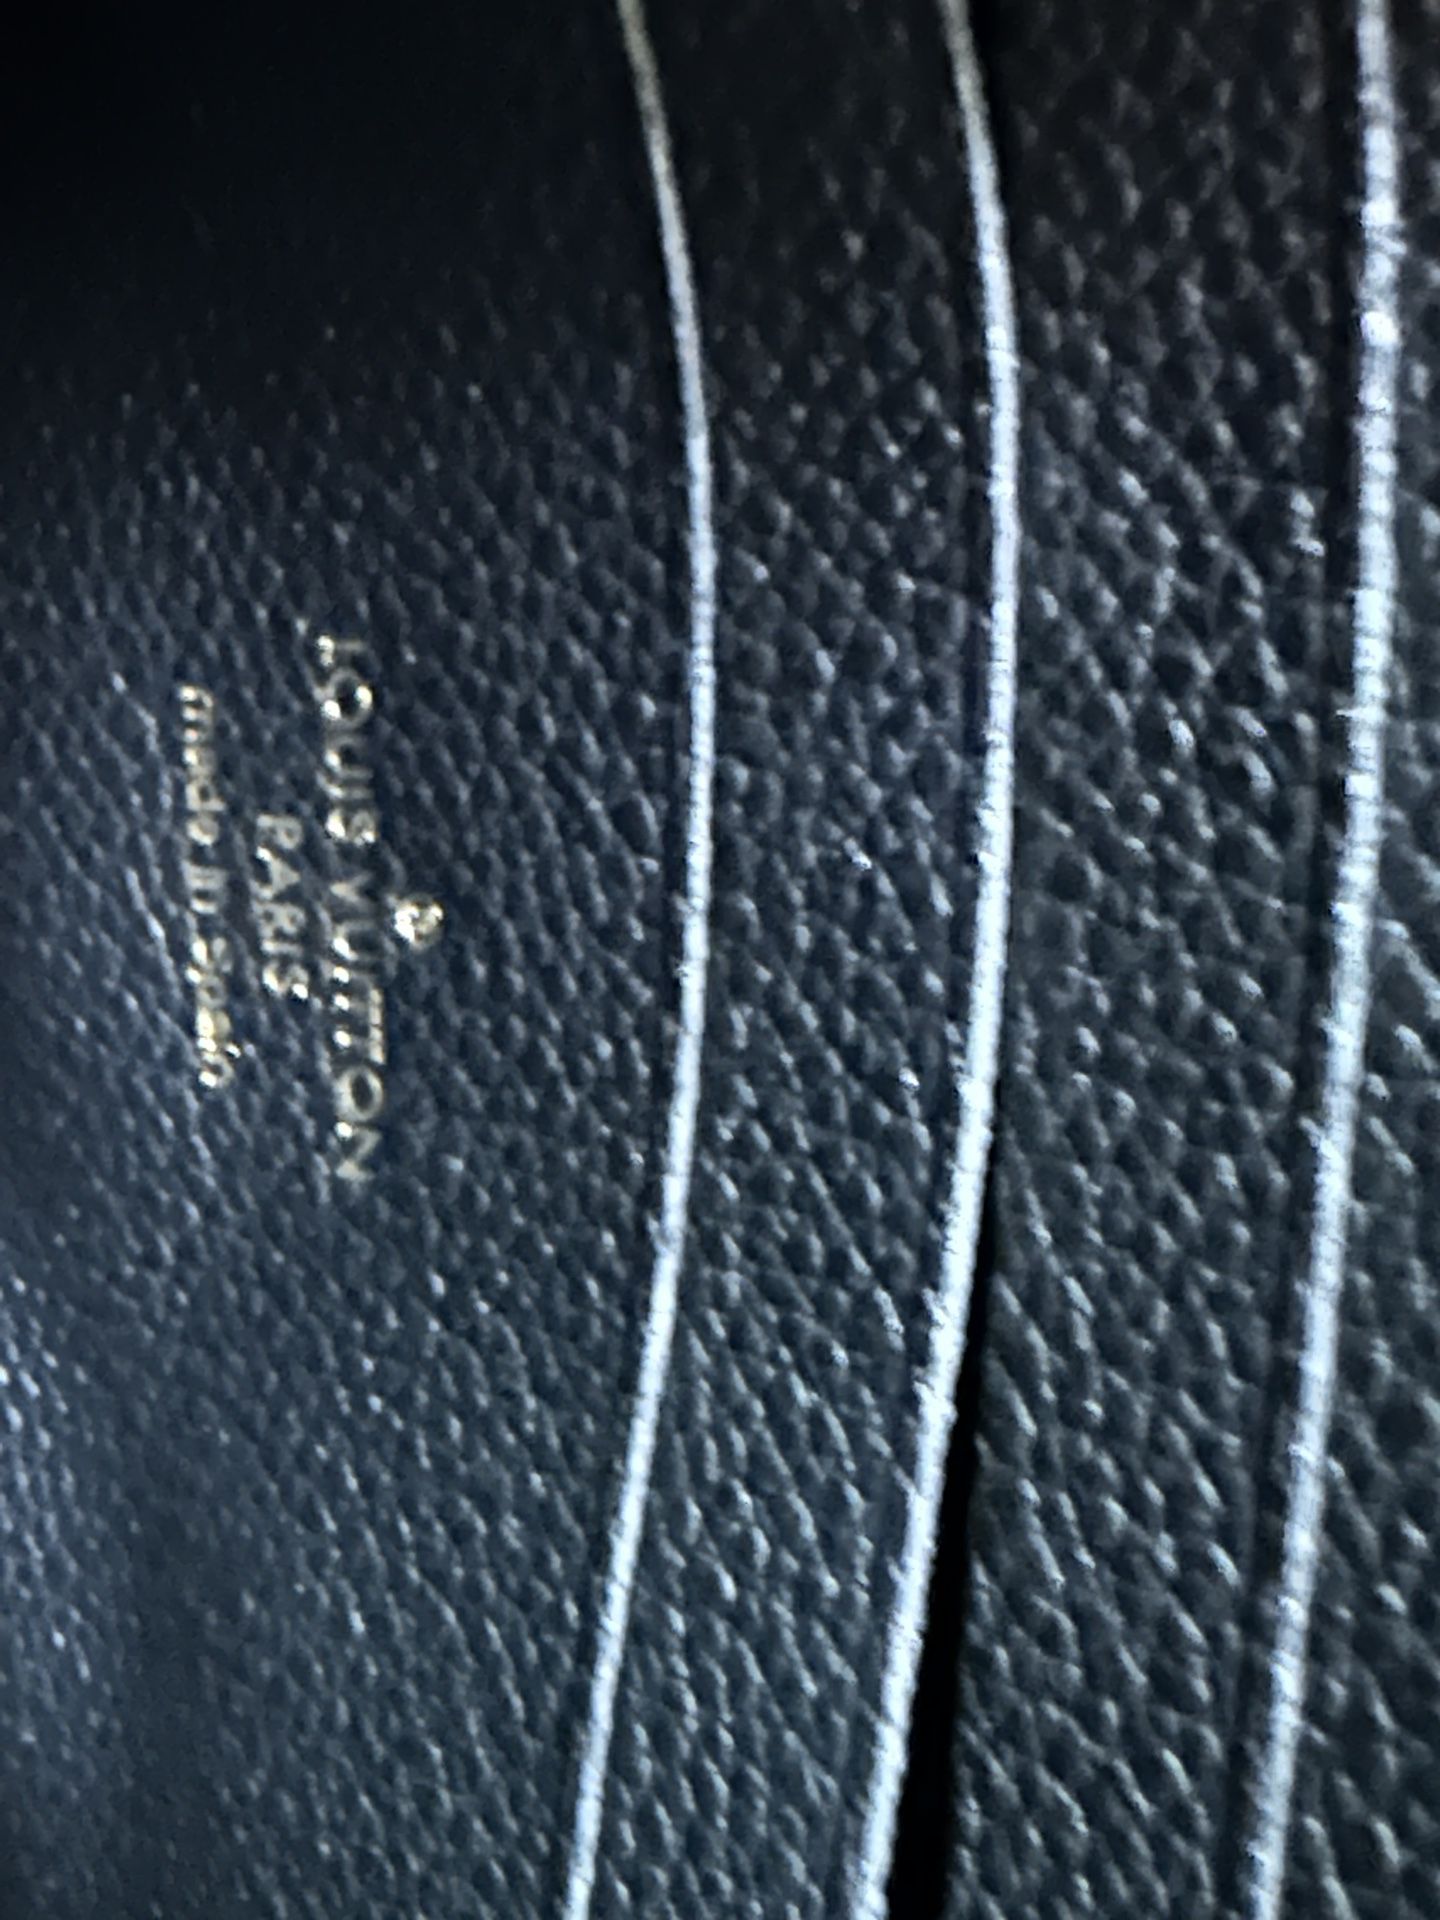 Louis Vuitton Pochette Twin GM for Sale in Modesto, CA - OfferUp